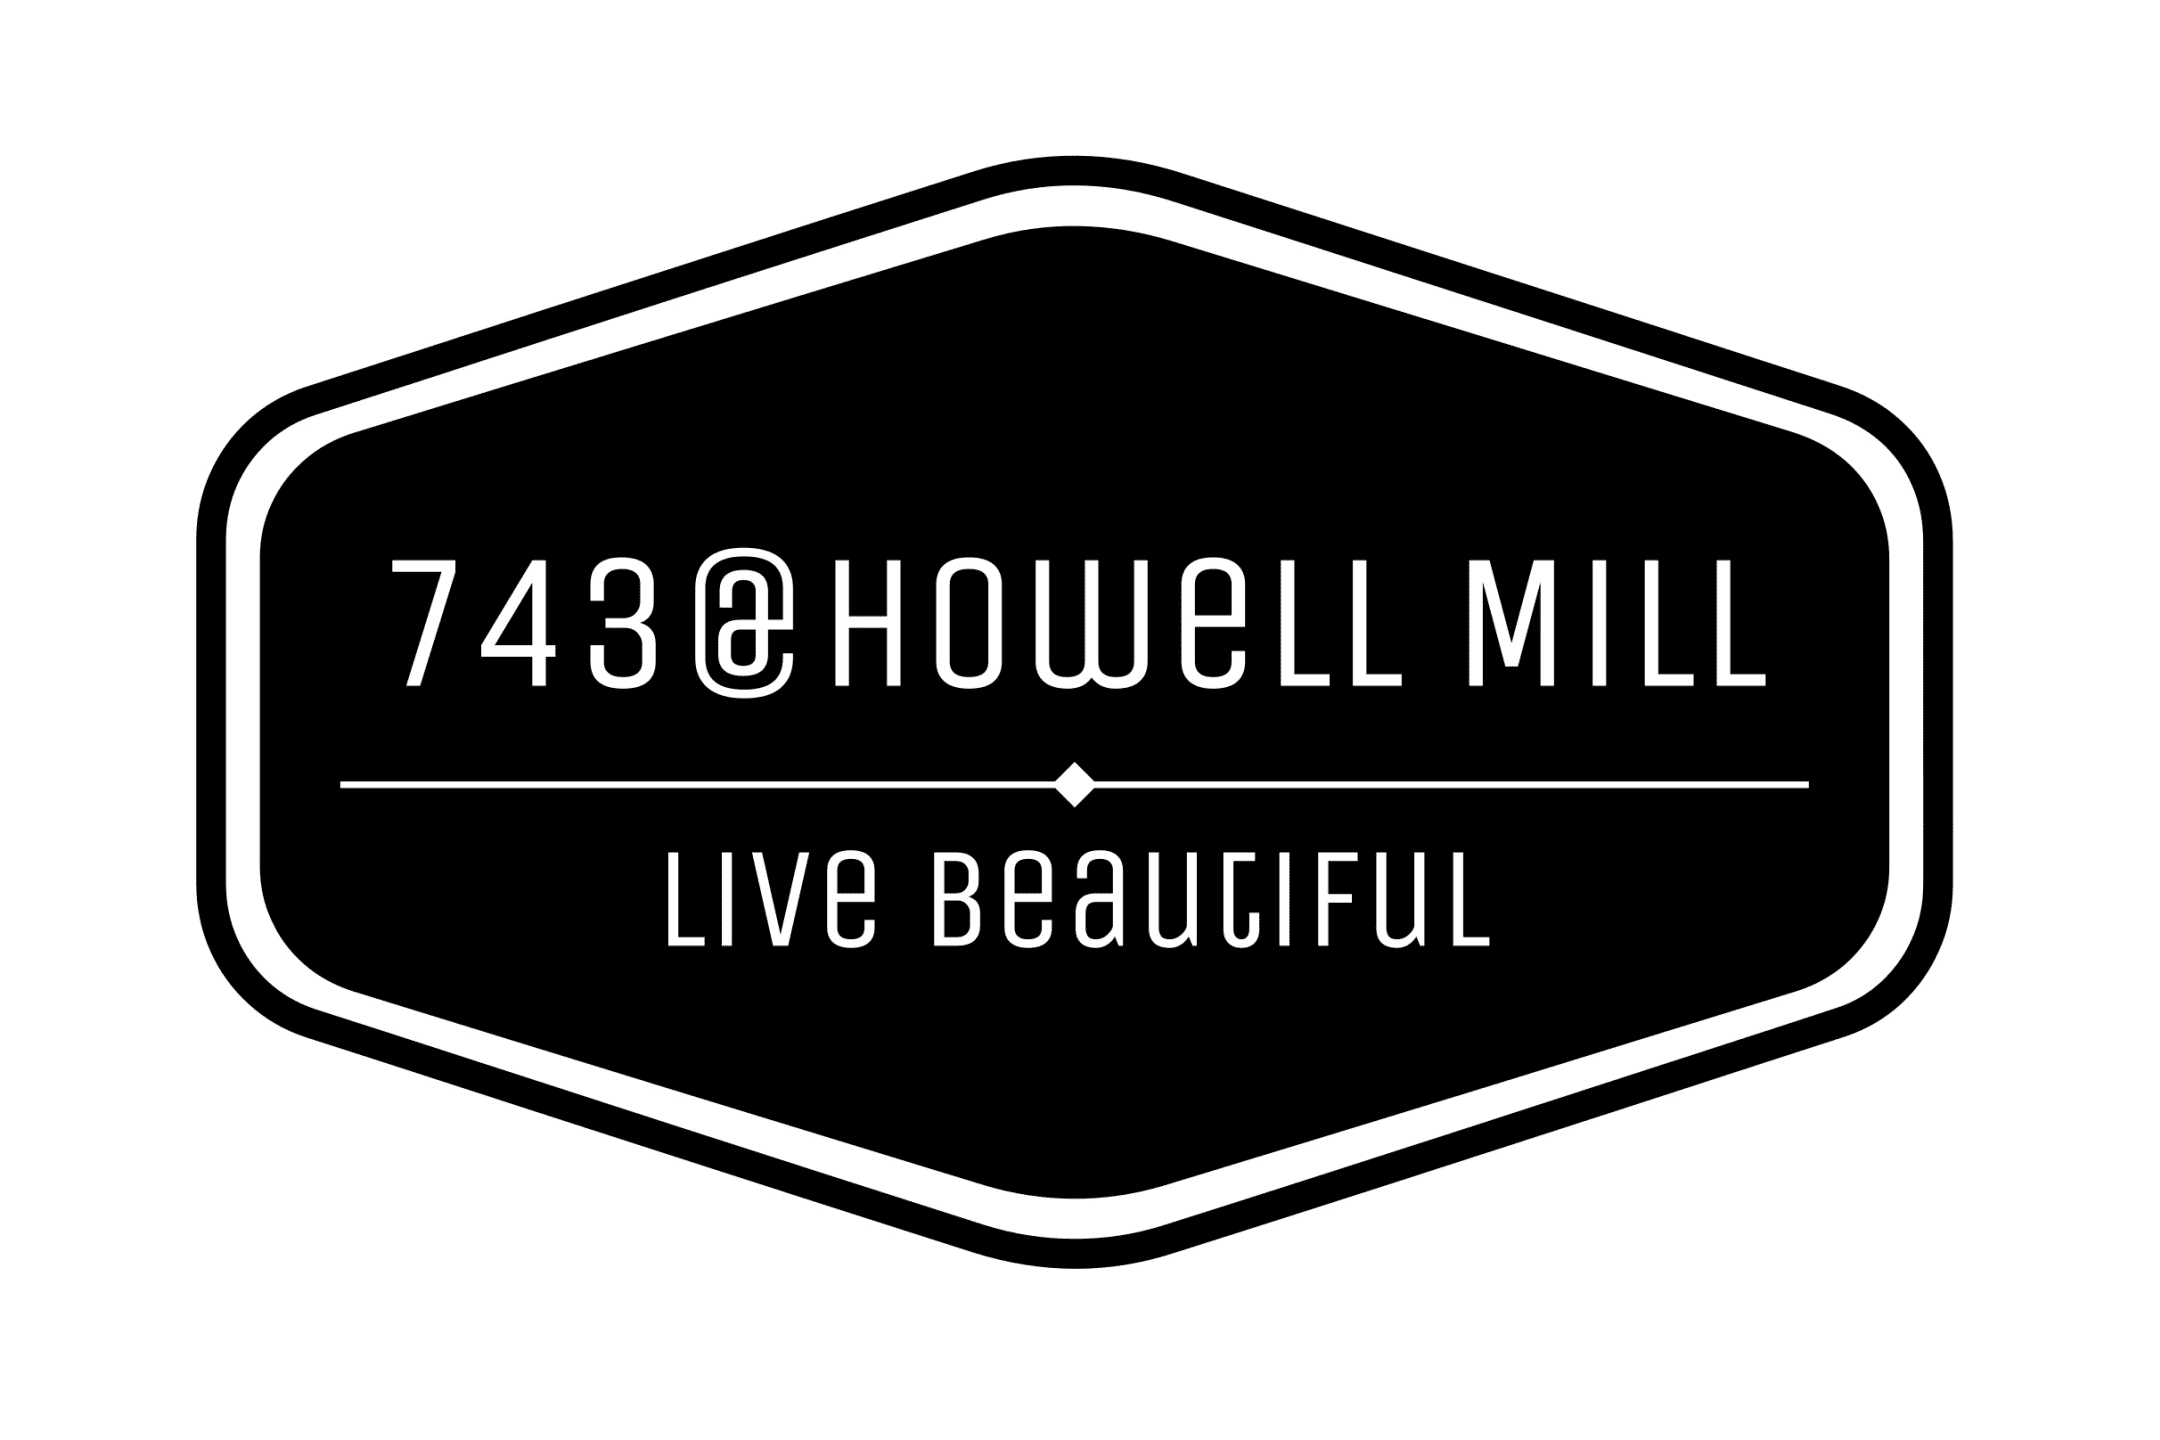 743 @ Howell Mill - Atlanta, GA